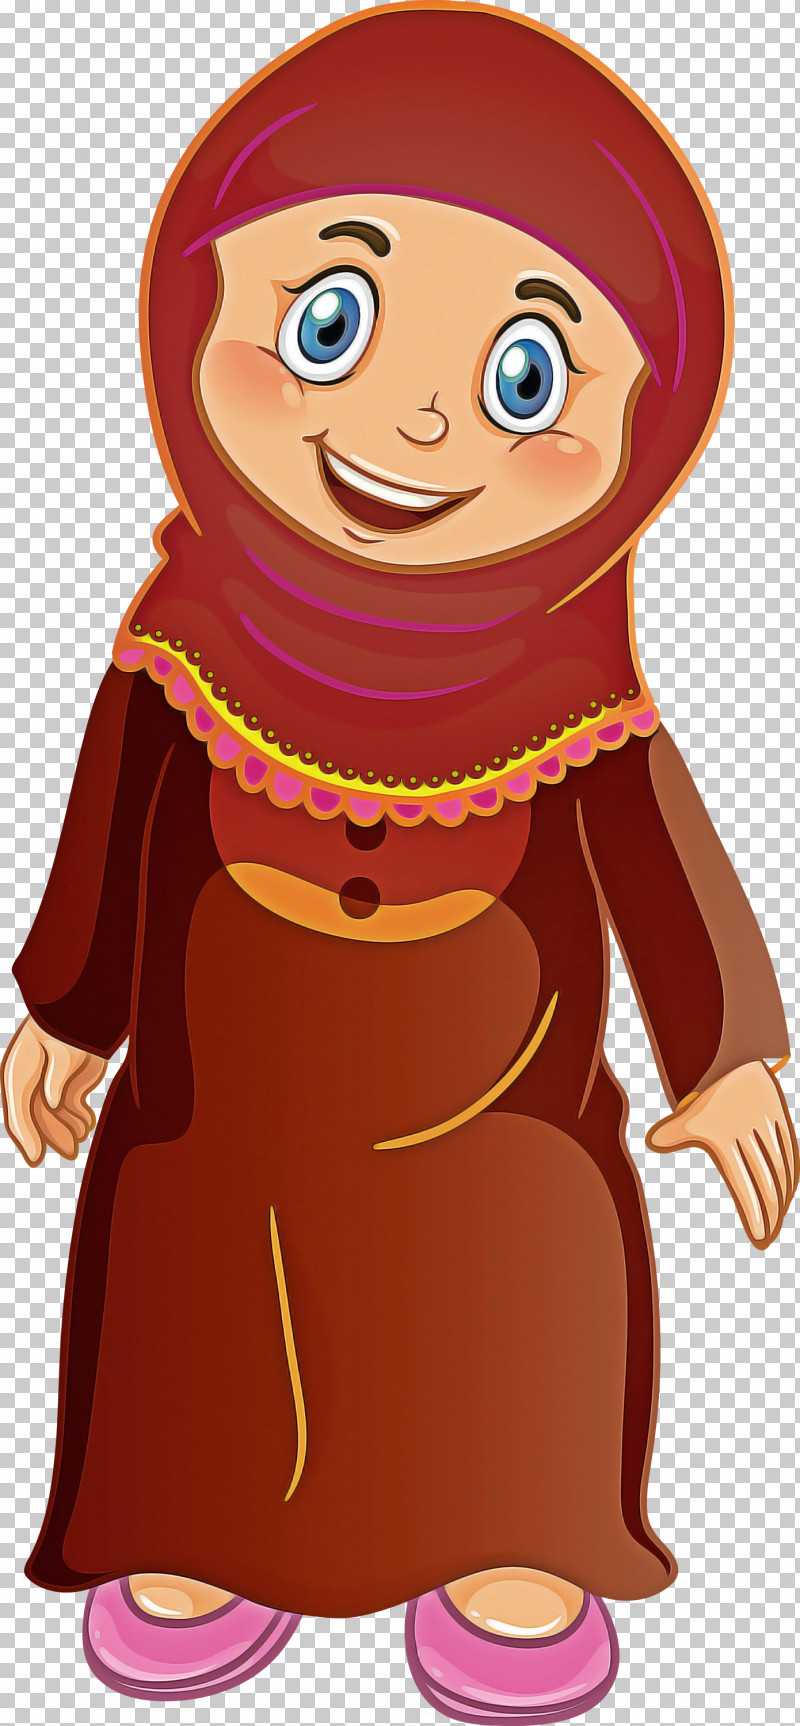 Muslim People PNG, Clipart, Animation, Cartoon, Gesture, Muslim People, Smile Free PNG Download